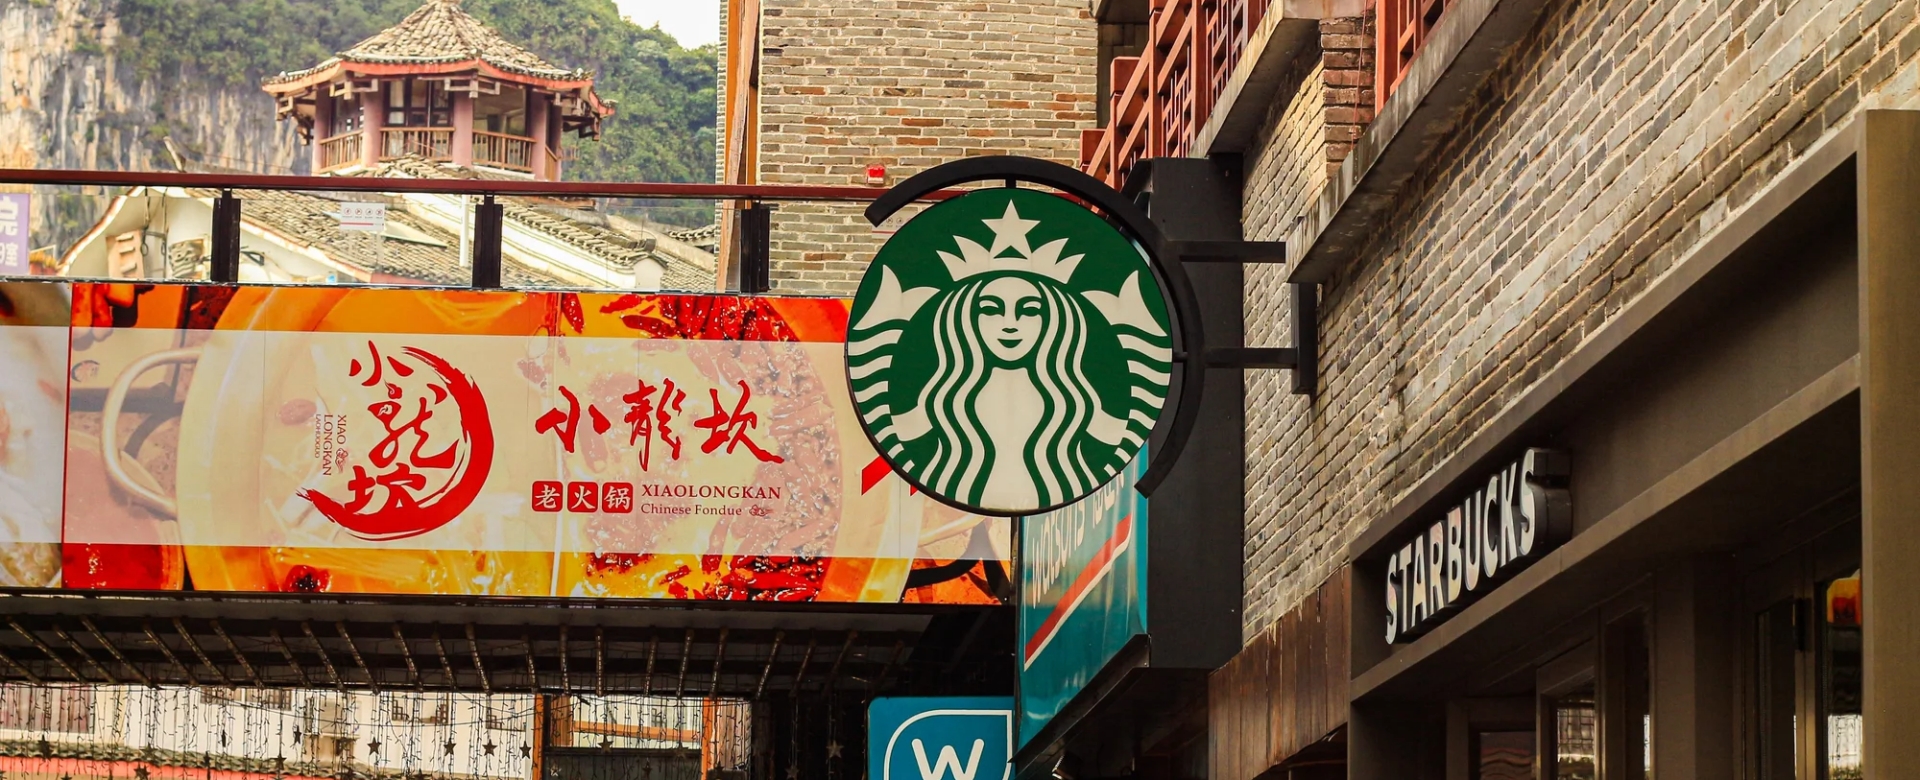 BizLab: Starbucks và “cơn ác mộng” tại thị trường Trung Quốc